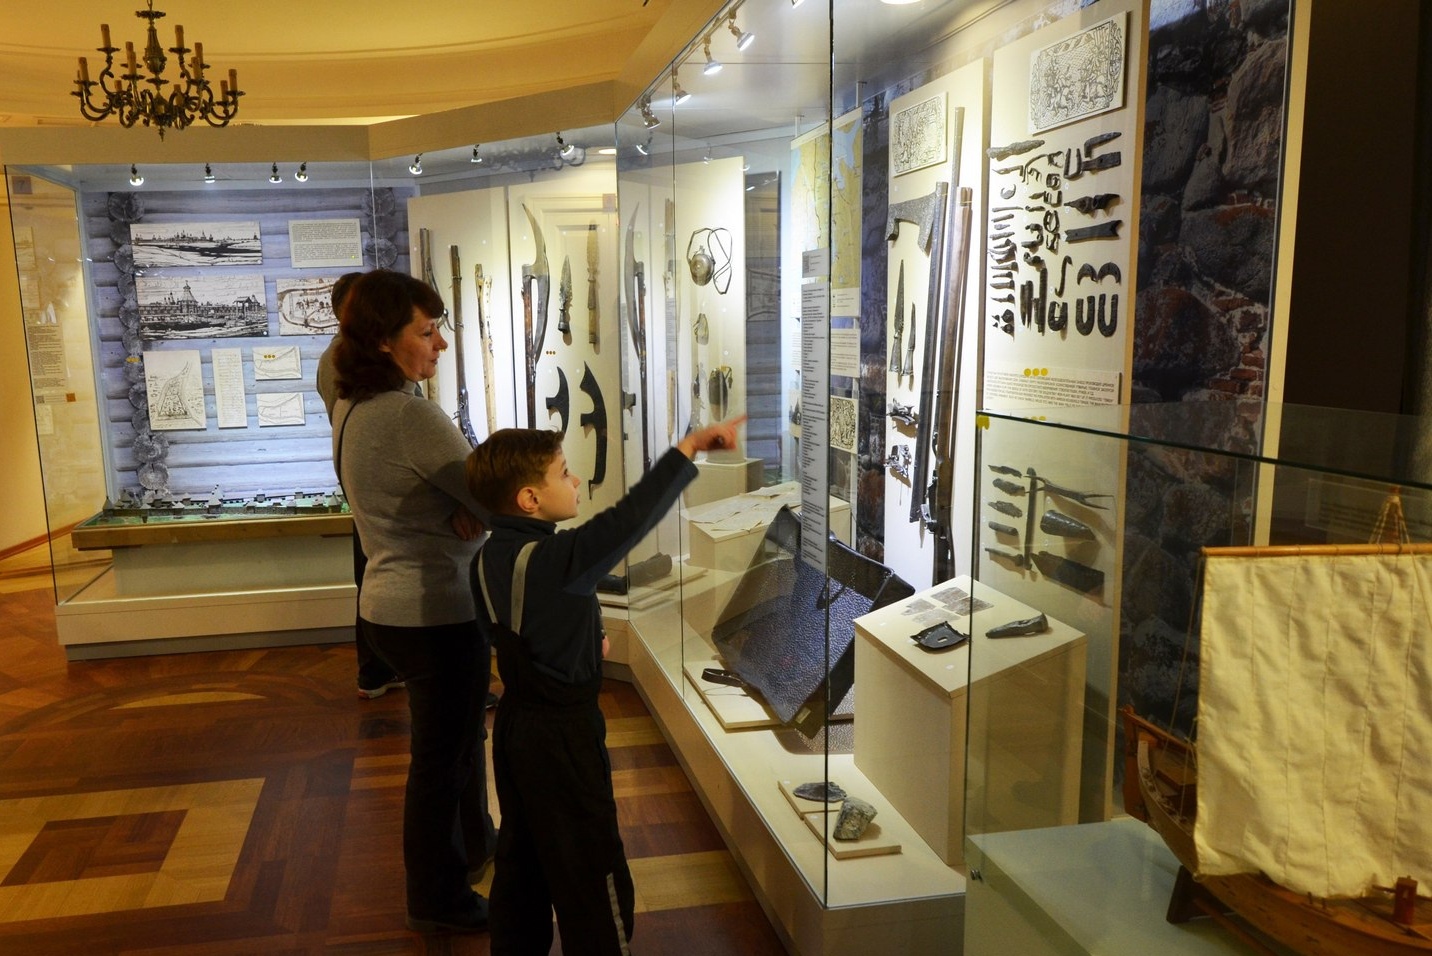 Projekti on tarkotettu kävijillä, kumpaset ečitäh uušie epätavallisie toimenpitoja musejoissa. 6+ Kuva: Karjalan kanšallisen musejon VK-šivu